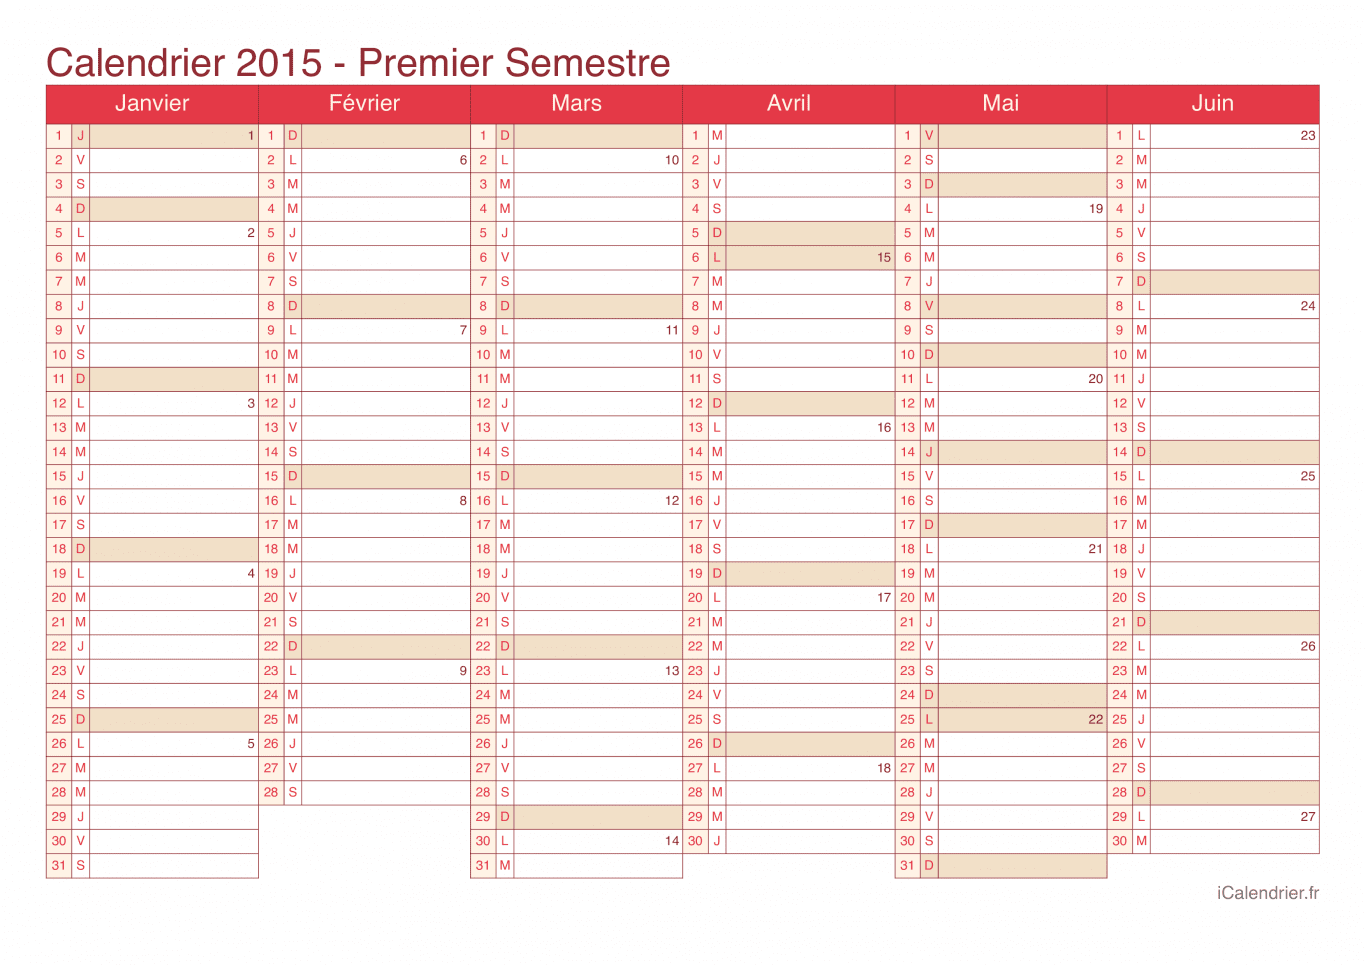 Calendrier par semestre avec numéros des semaines 2015 - Cherry